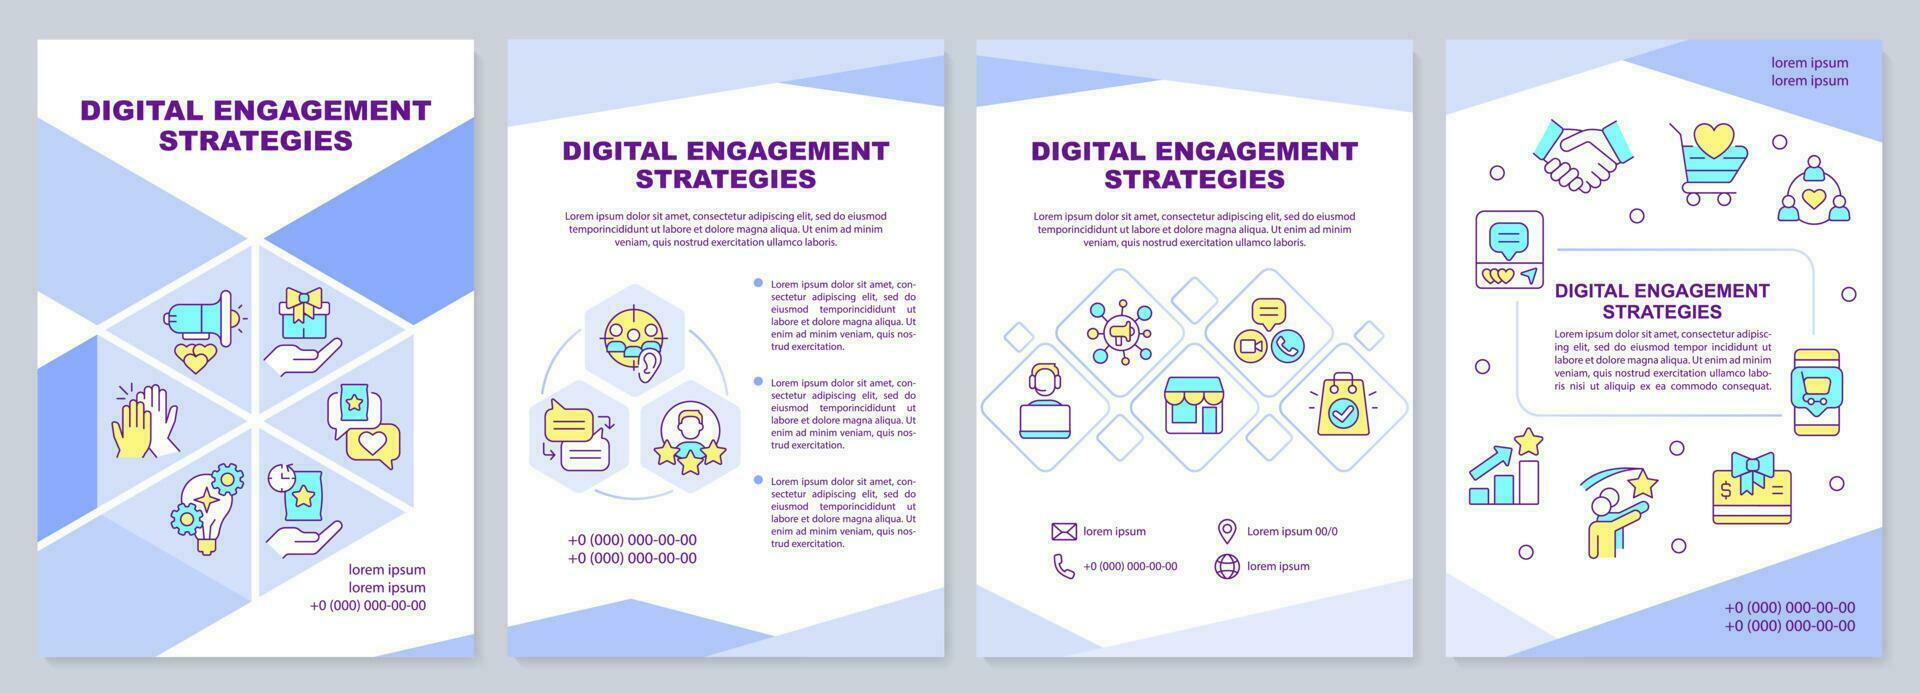 digital engagemang strategier broschyr mall. folder design med linjär ikoner. redigerbar 4 vektor layouter för presentation, årlig rapporter